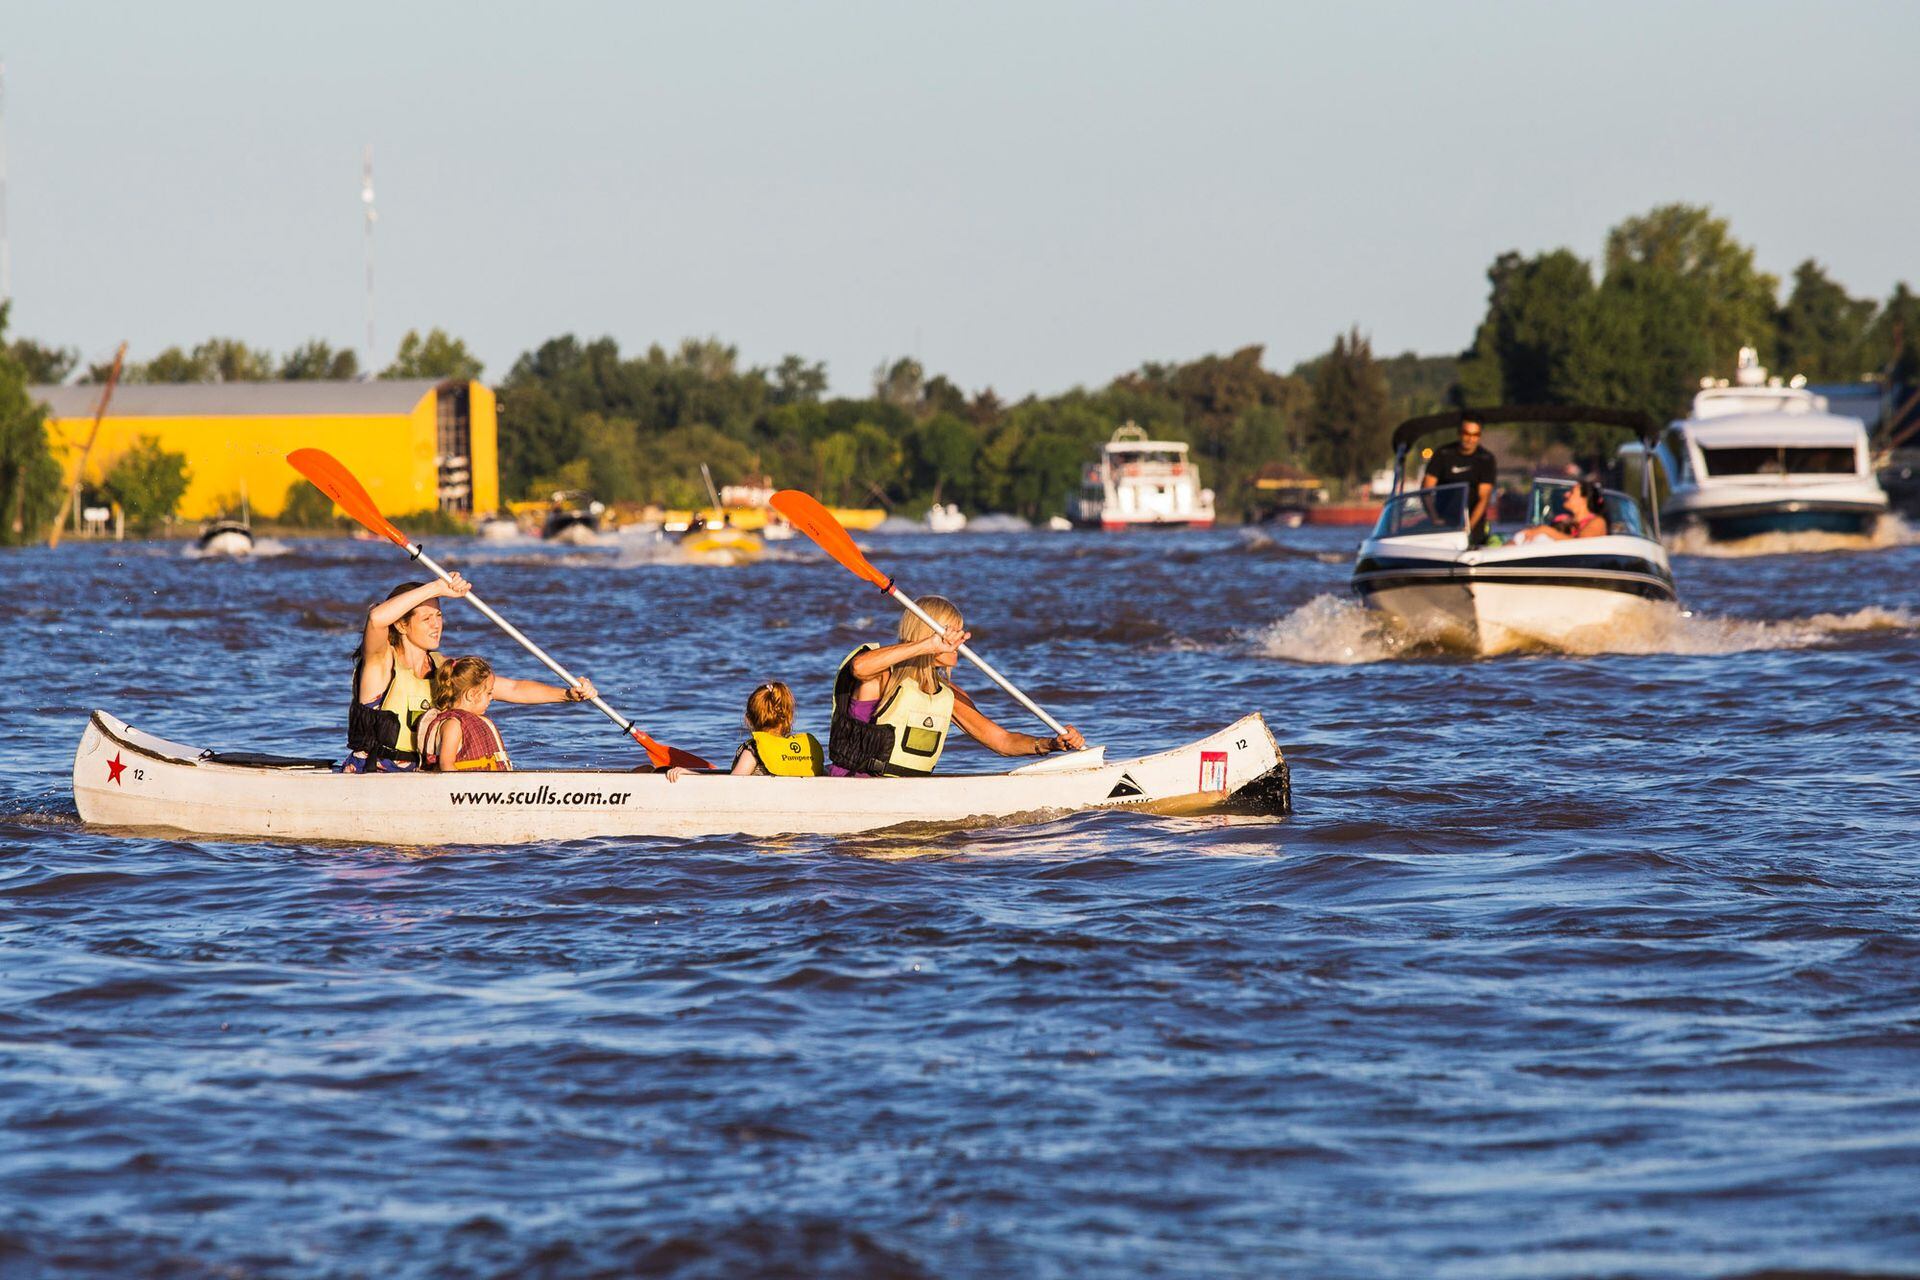 Botes de remo, lanchas, yates y embarcaciones de transporte de pasajeros se mezclan en el río Luján donde el peligro acecha